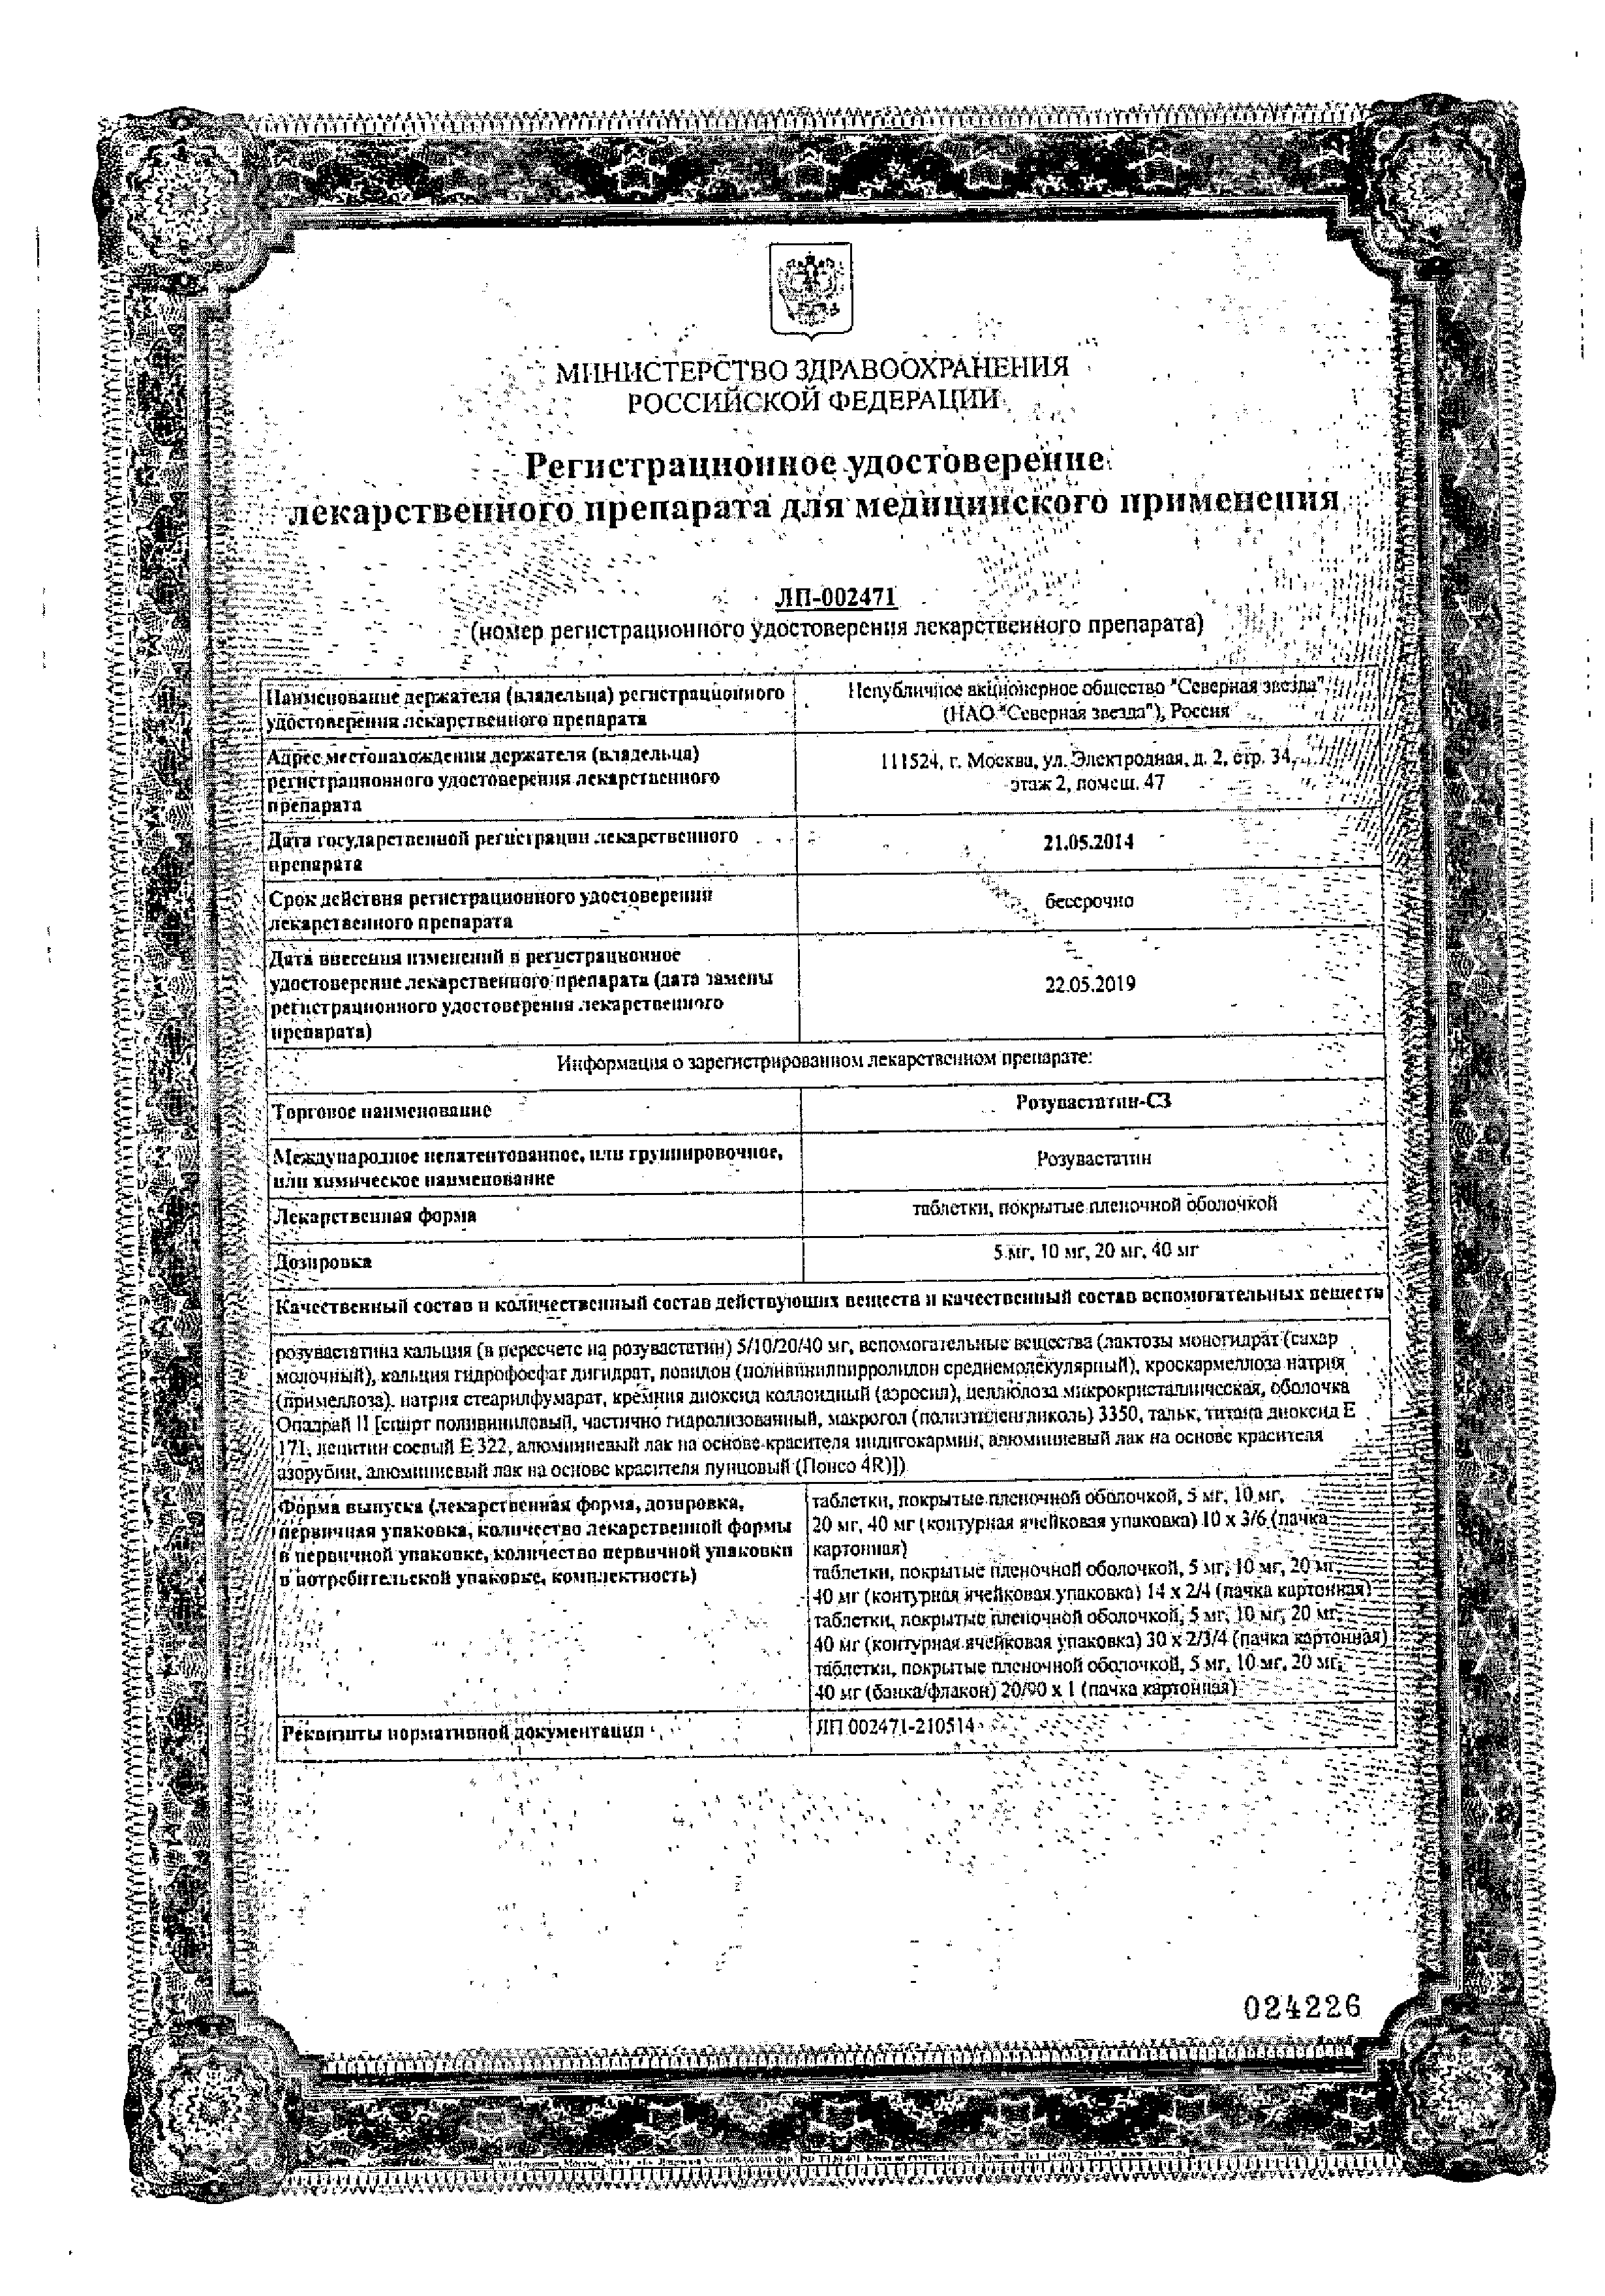 Розувастатин-СЗ сертификат